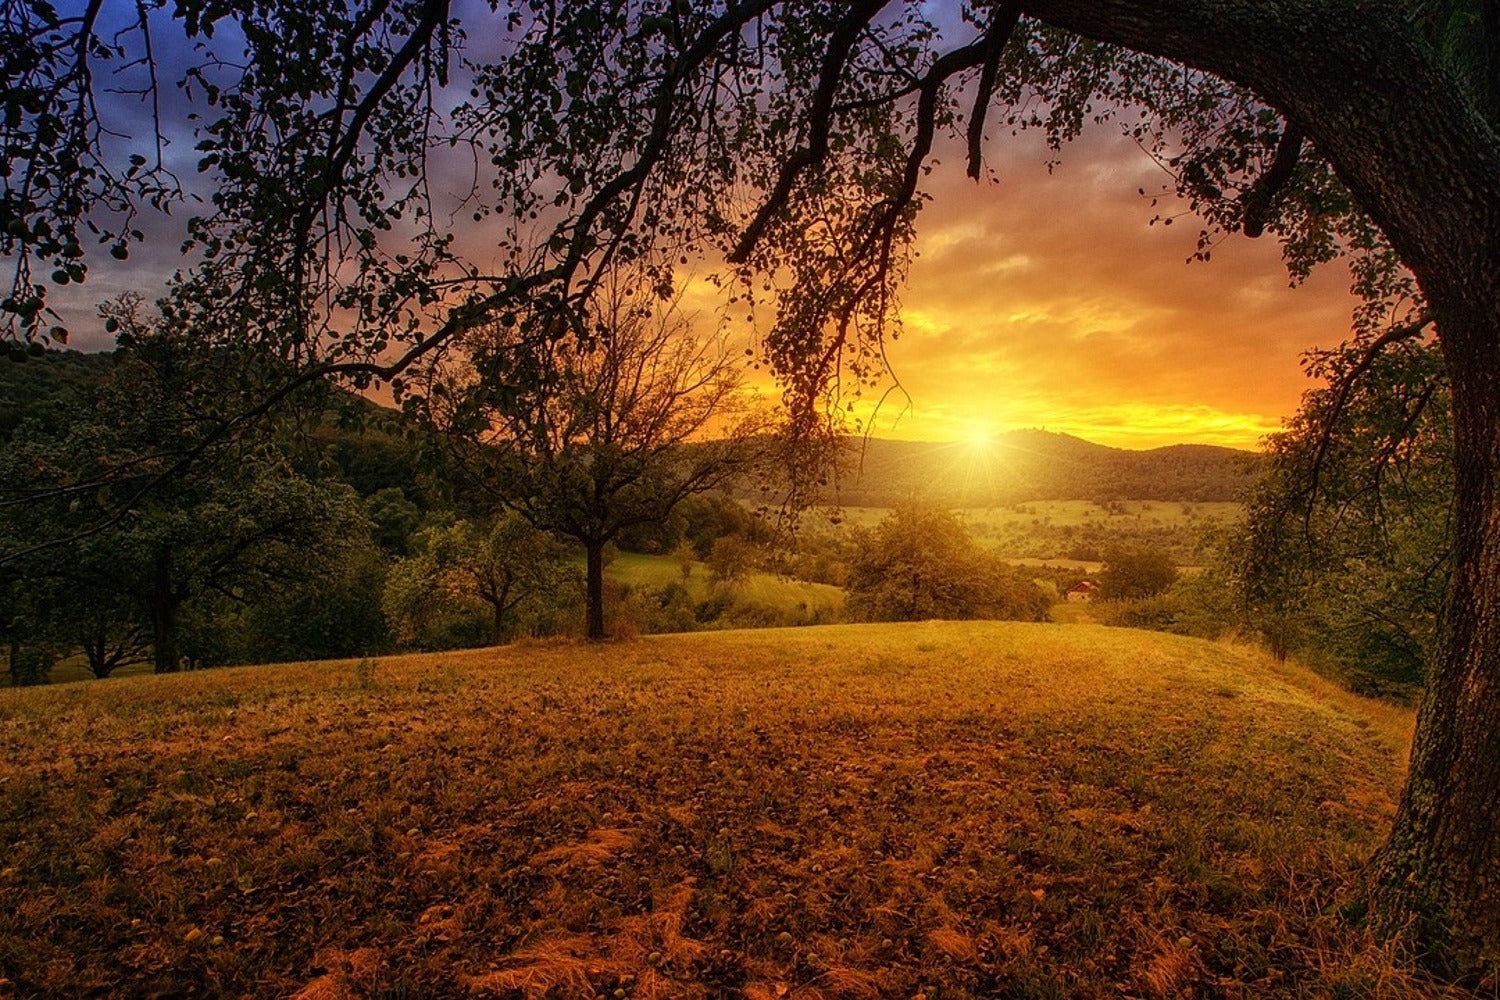  Landschaften Hintergrundbild 1500x1000. Fototapete Eine Landschaft im Sonnenuntergang. SoiréeArts